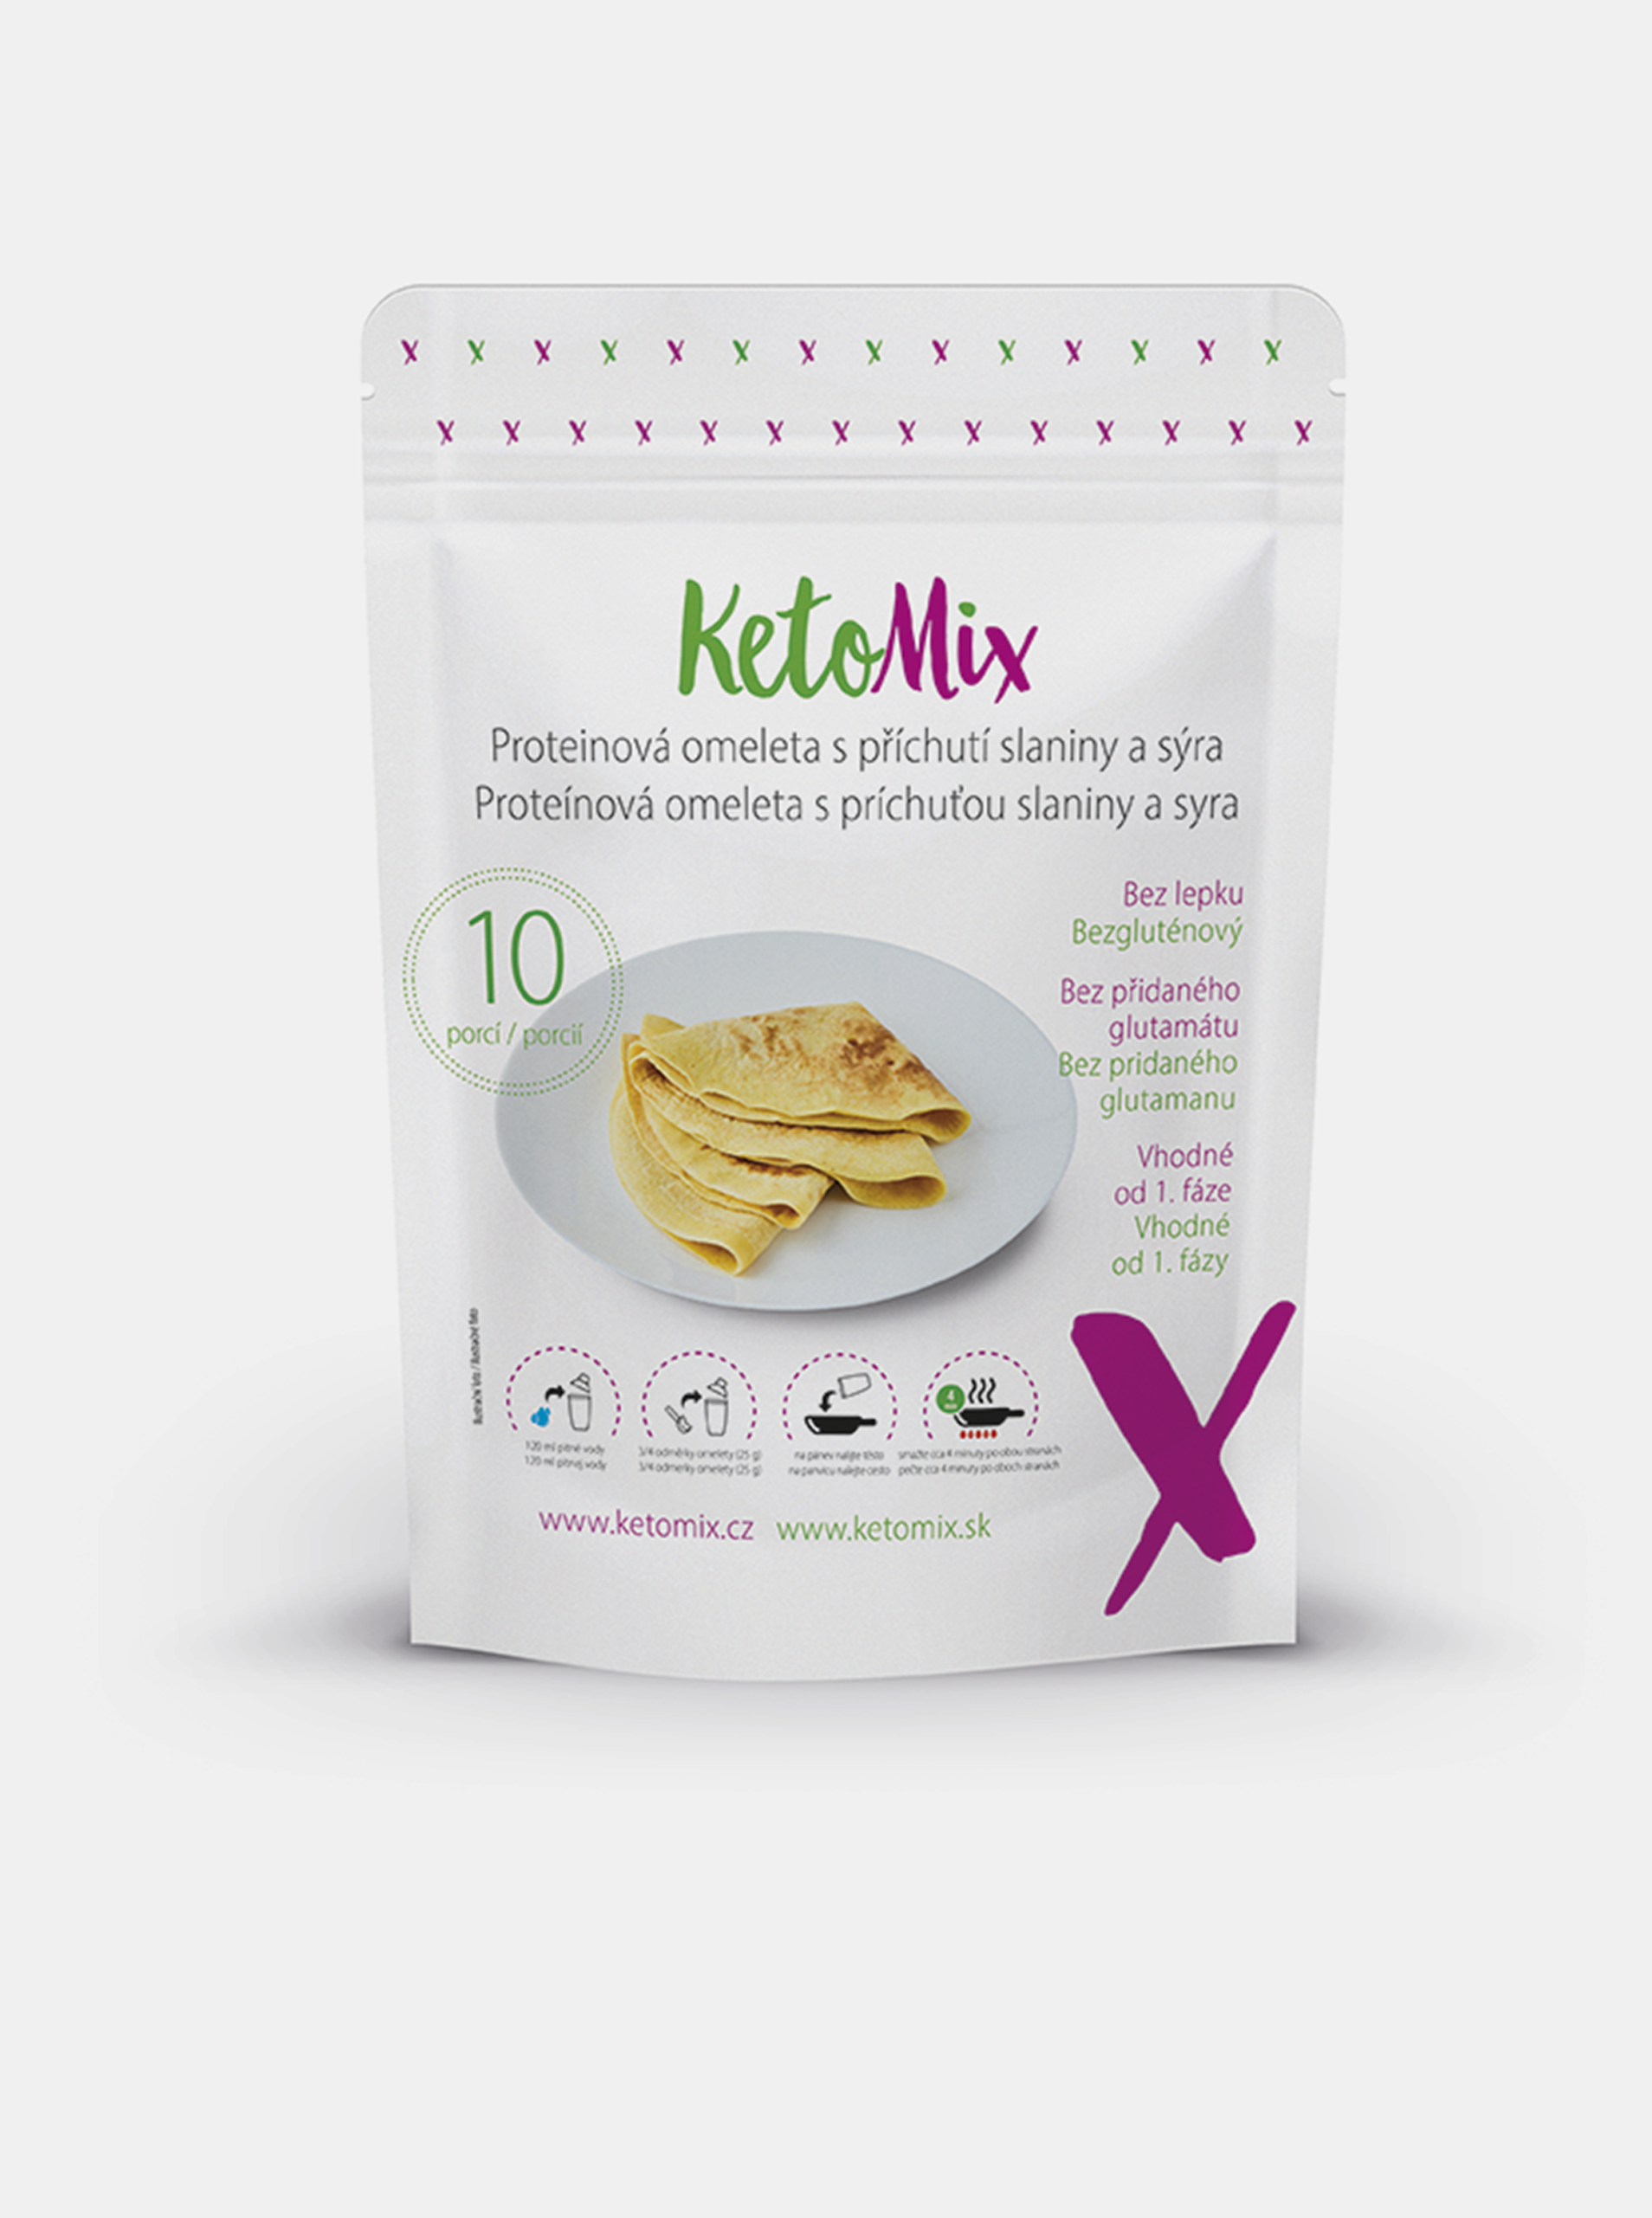 Proteinová omeleta s příchutí slaniny a sýra KetoMix (10 porcí)